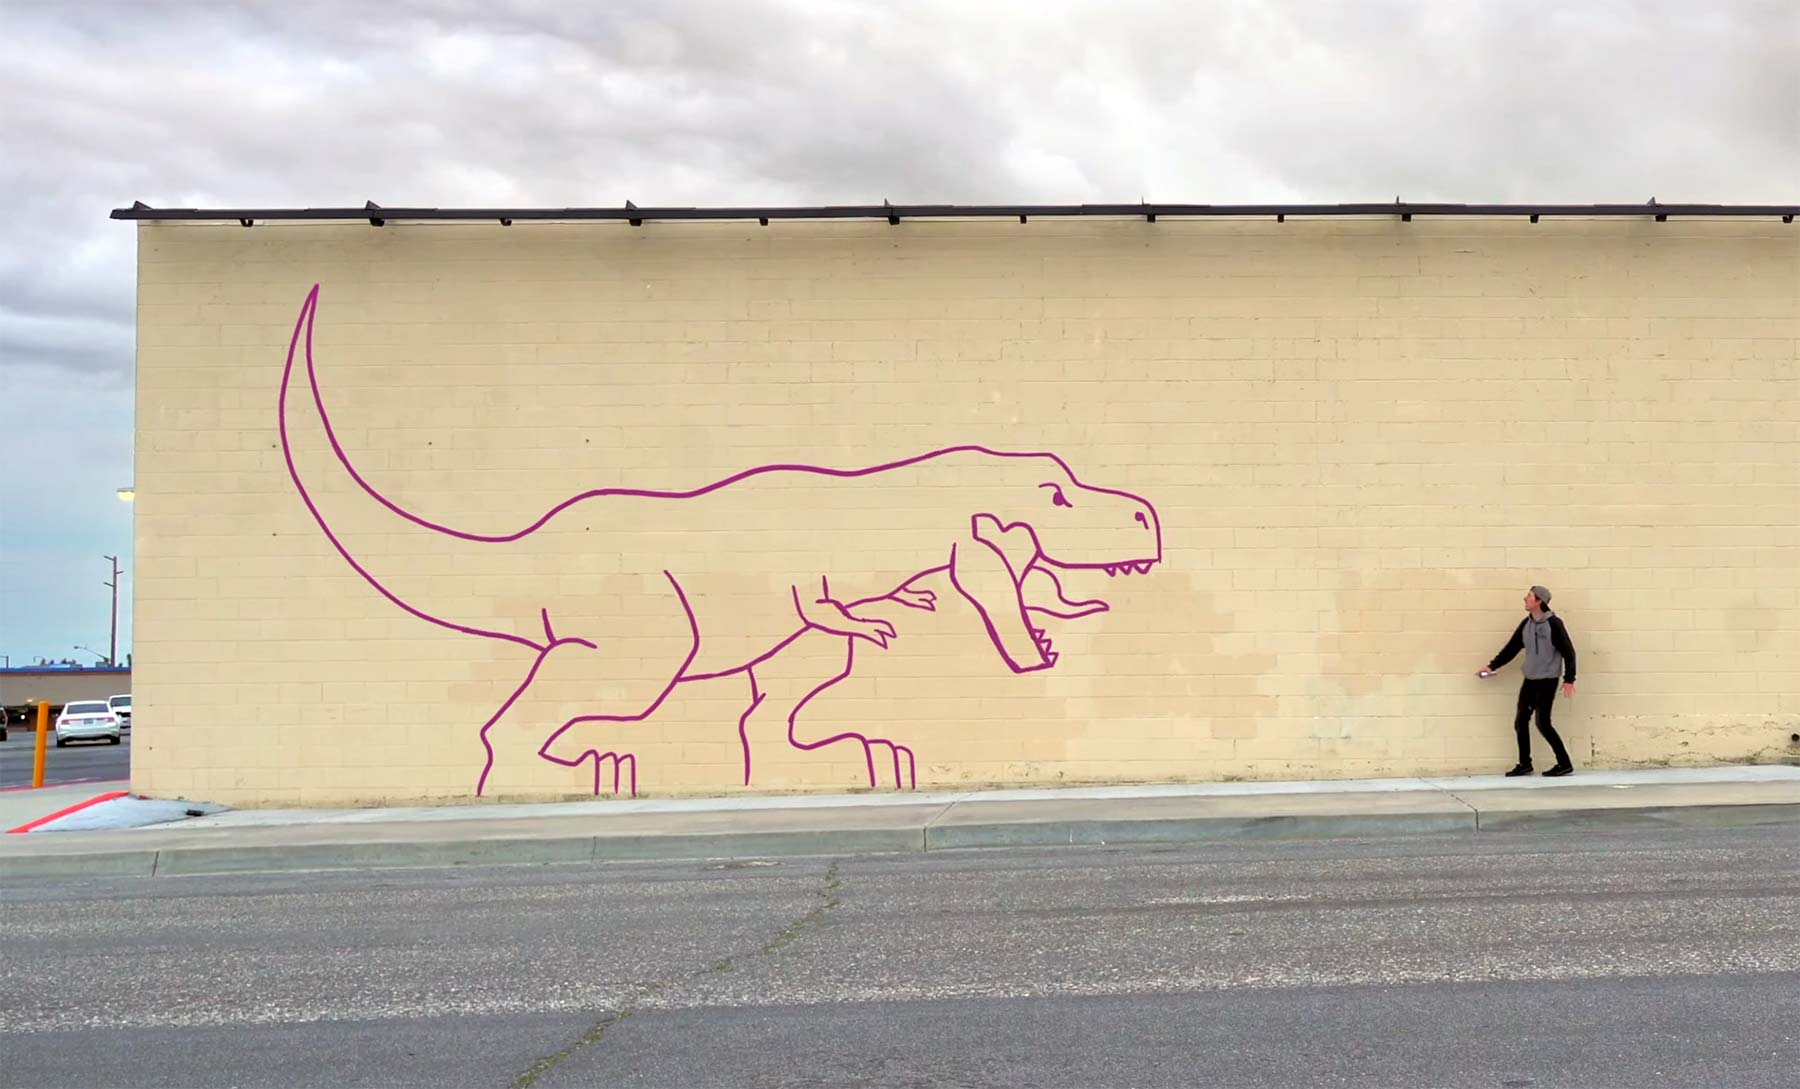 Auf Wand gesprühte Dinosaurier-Animation Dinosaurier-auf-wand-animation-graffiti-cgi 